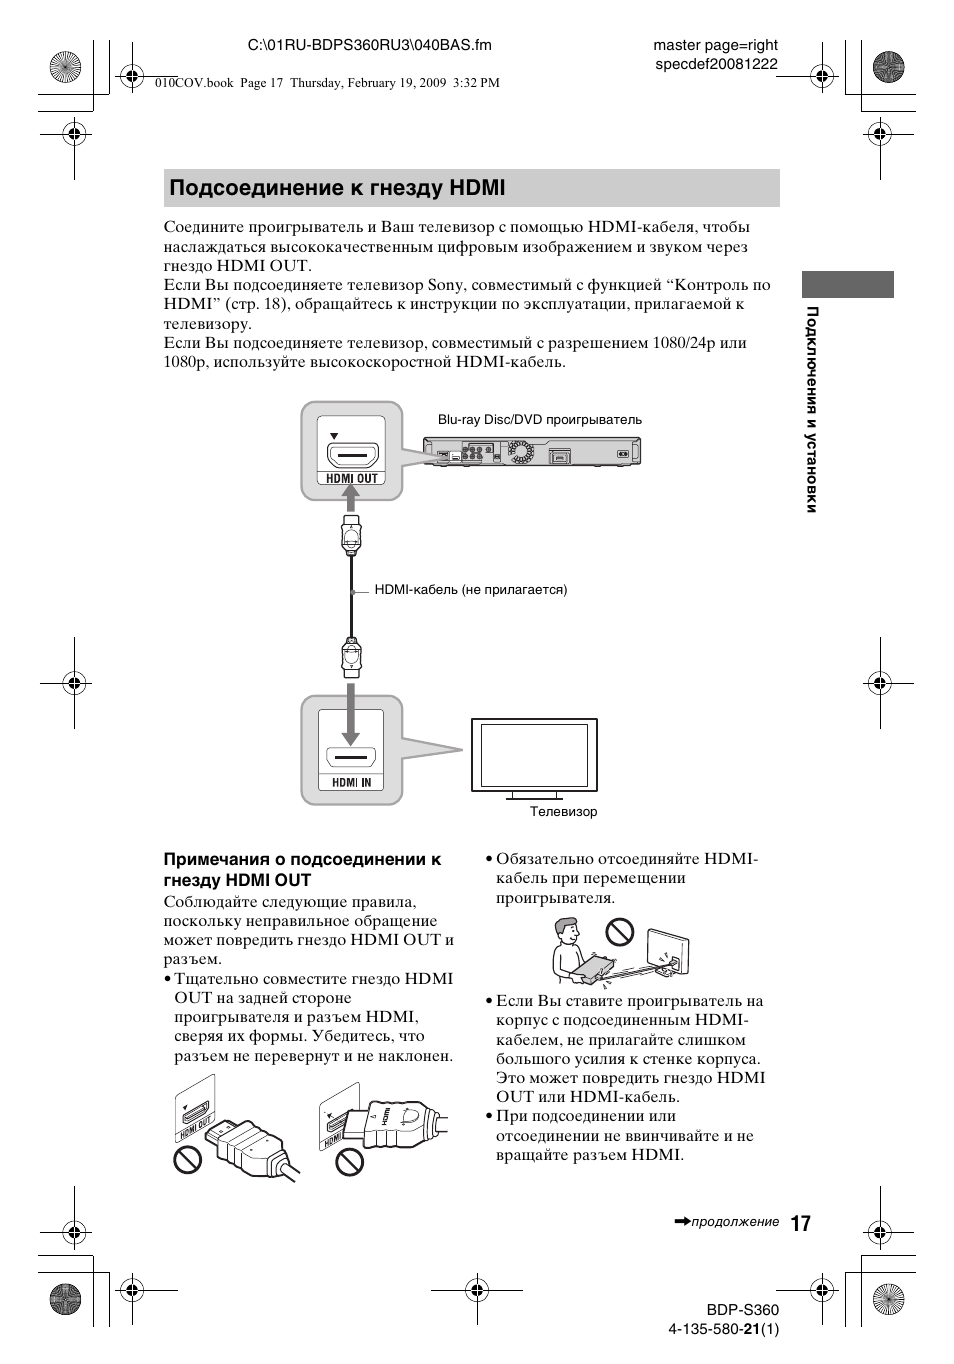 Подсоединение к гнезду hdmi | Инструкция по эксплуатации Sony BDP-S360 | Страница 17 / 82